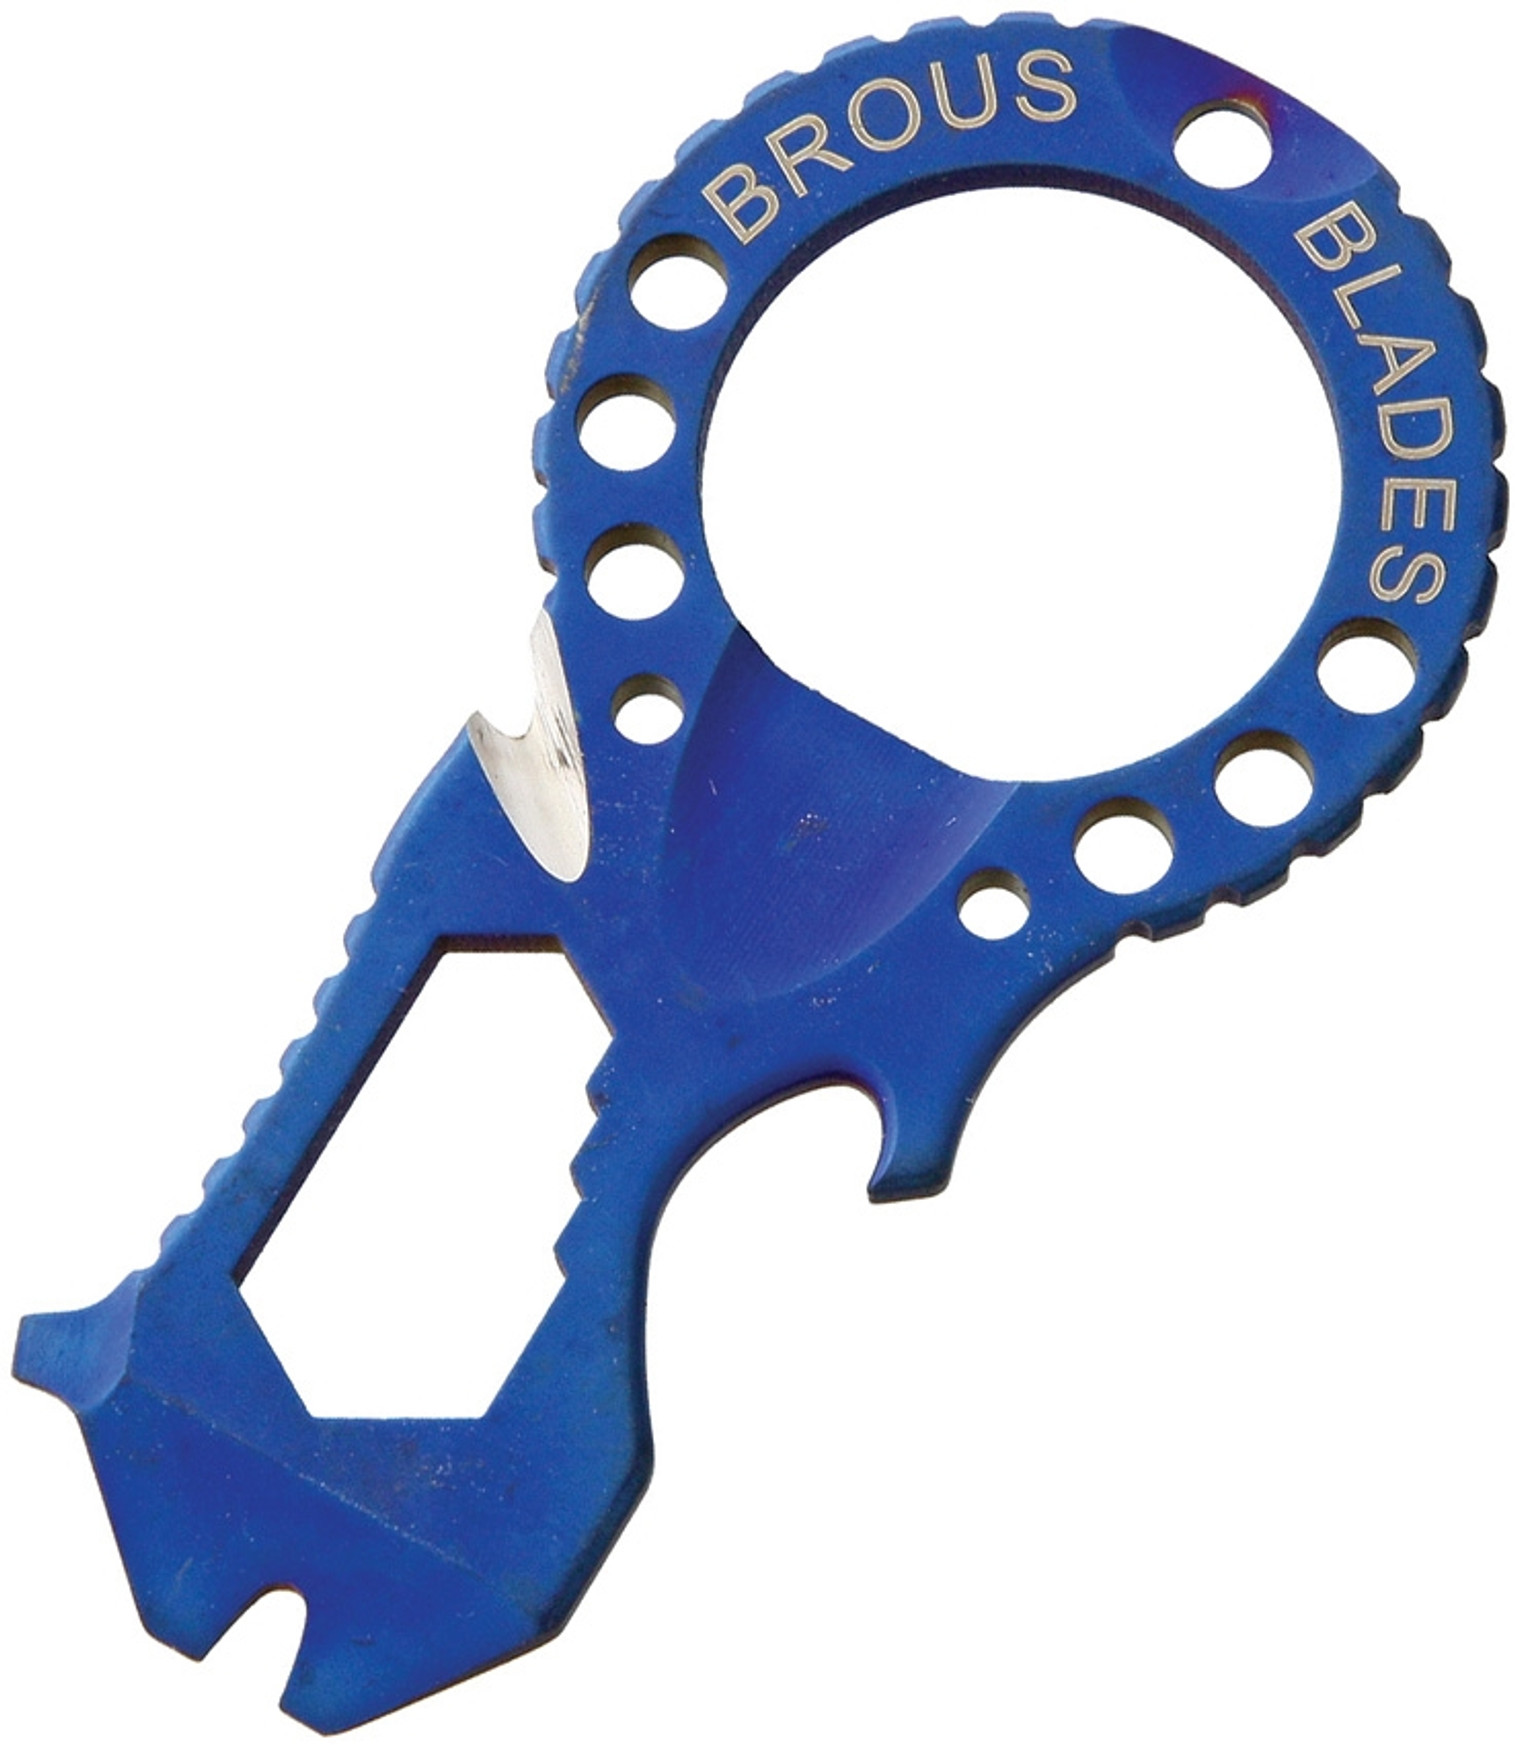 Multi-Tool Keychain Blue